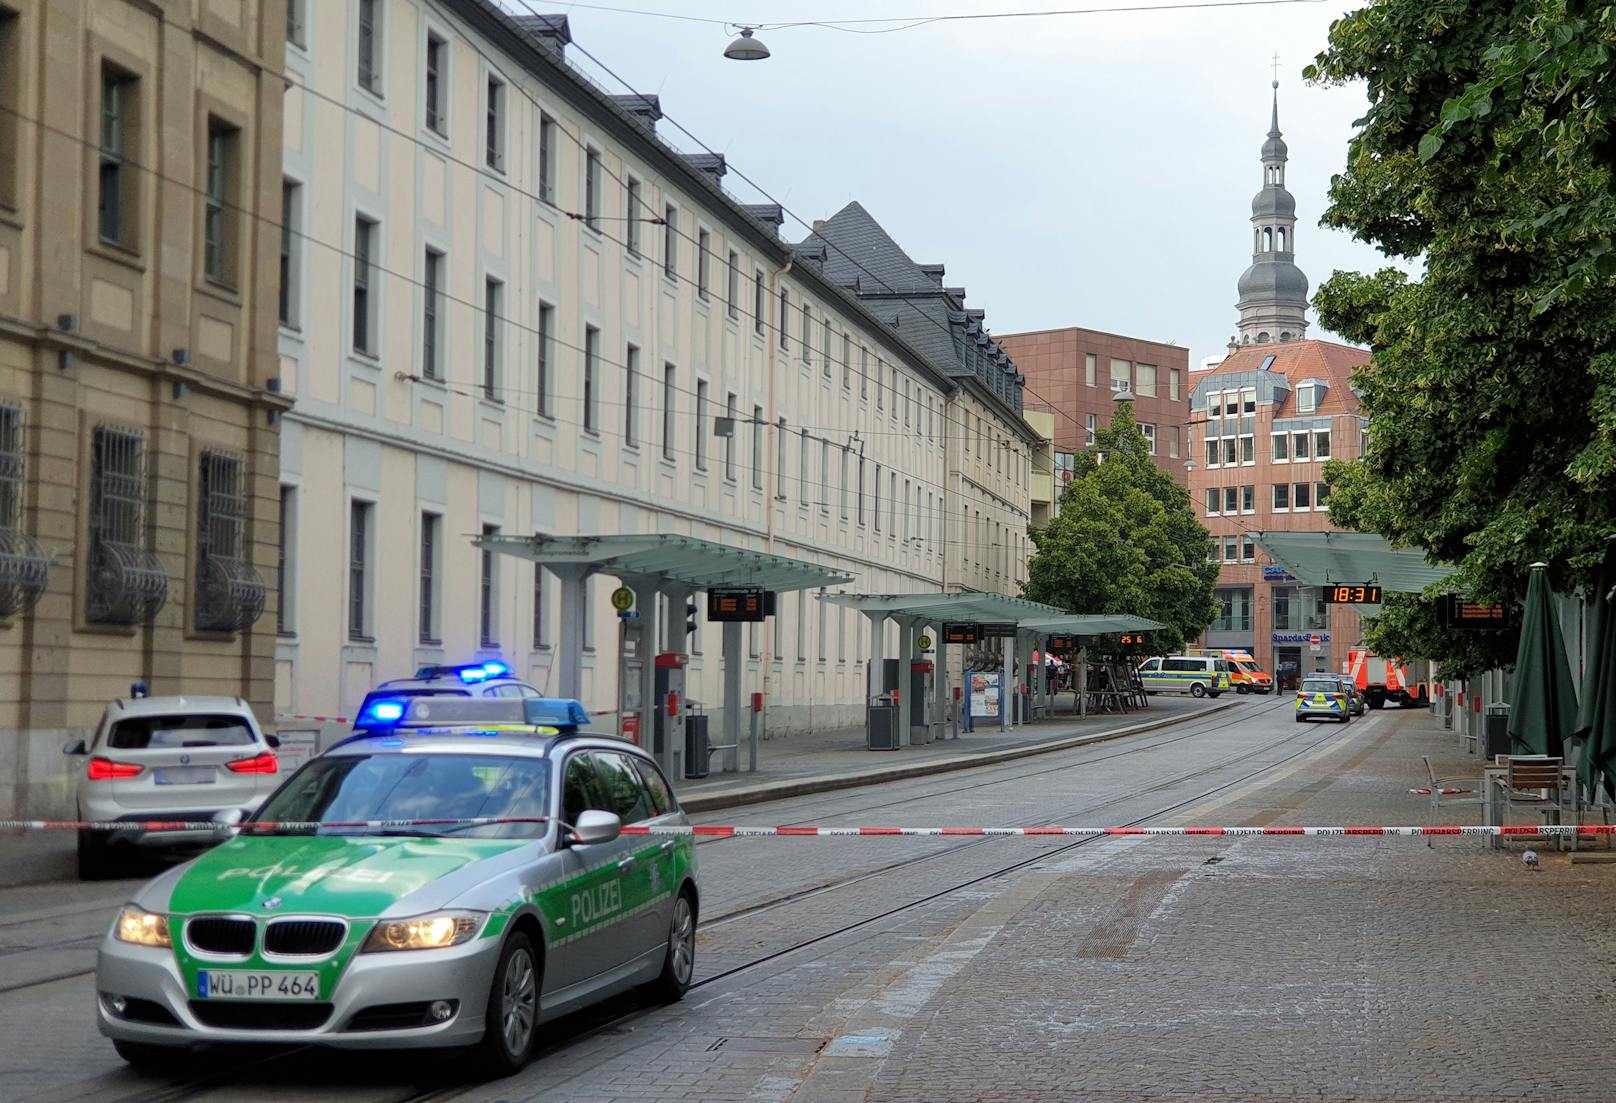 In der Würzburger Innenstadt ist es zu einem Gewaltverbrechen gekommen. Gemäß Medienberichten sind mindestens drei Personen tot.